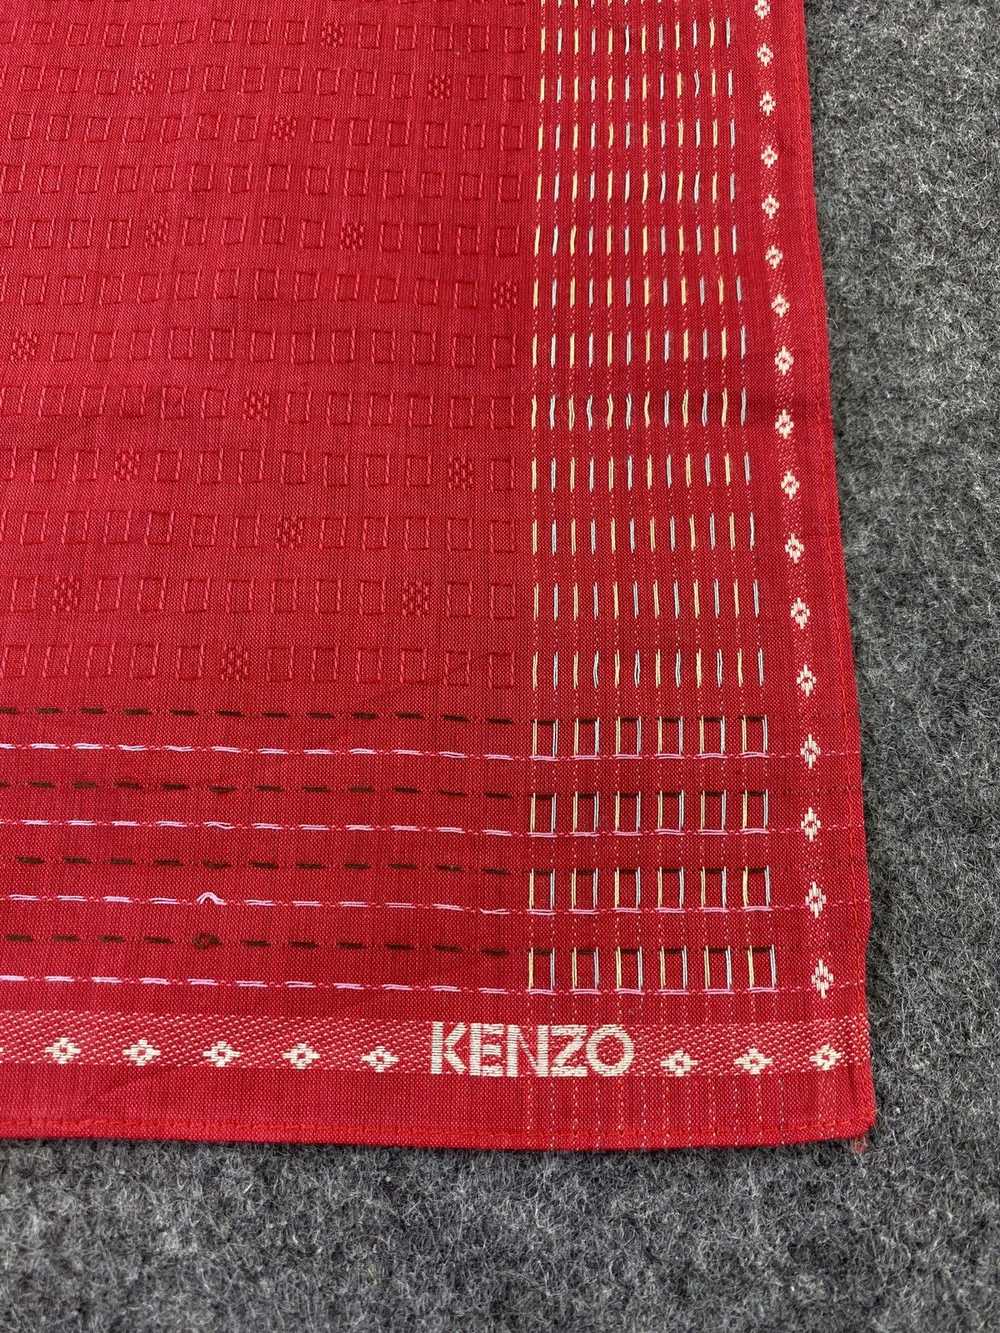 Kenzo × Streetwear × Vintage Kenzo Handkerchief N… - image 5